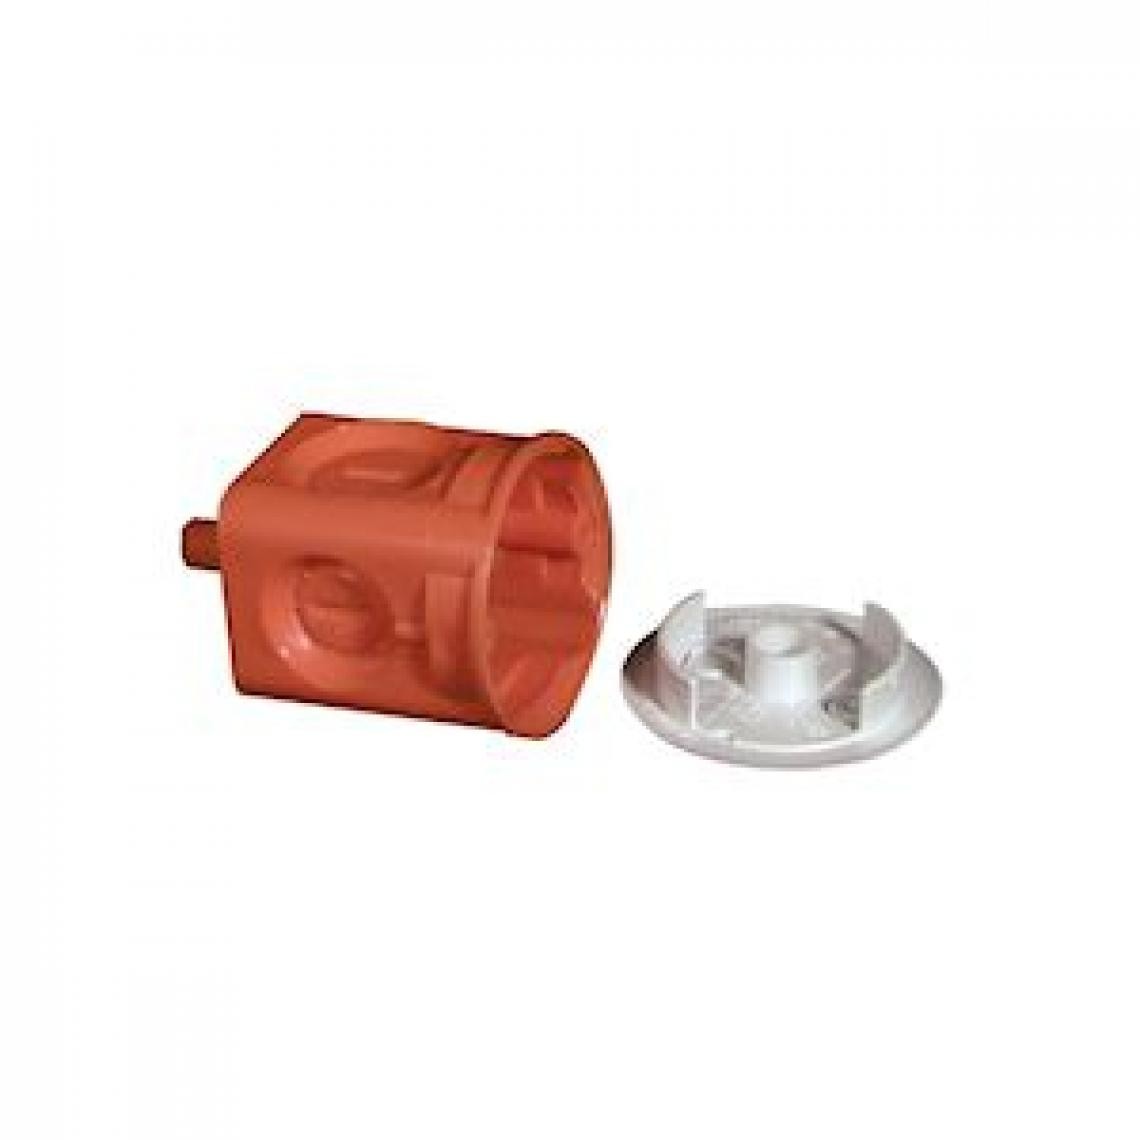 Capri - boite à sceller - capri capribox - applique - profondeur 60 mm - diamètre 44 mm - orange - capri 710083 - Boîtes d'encastrement